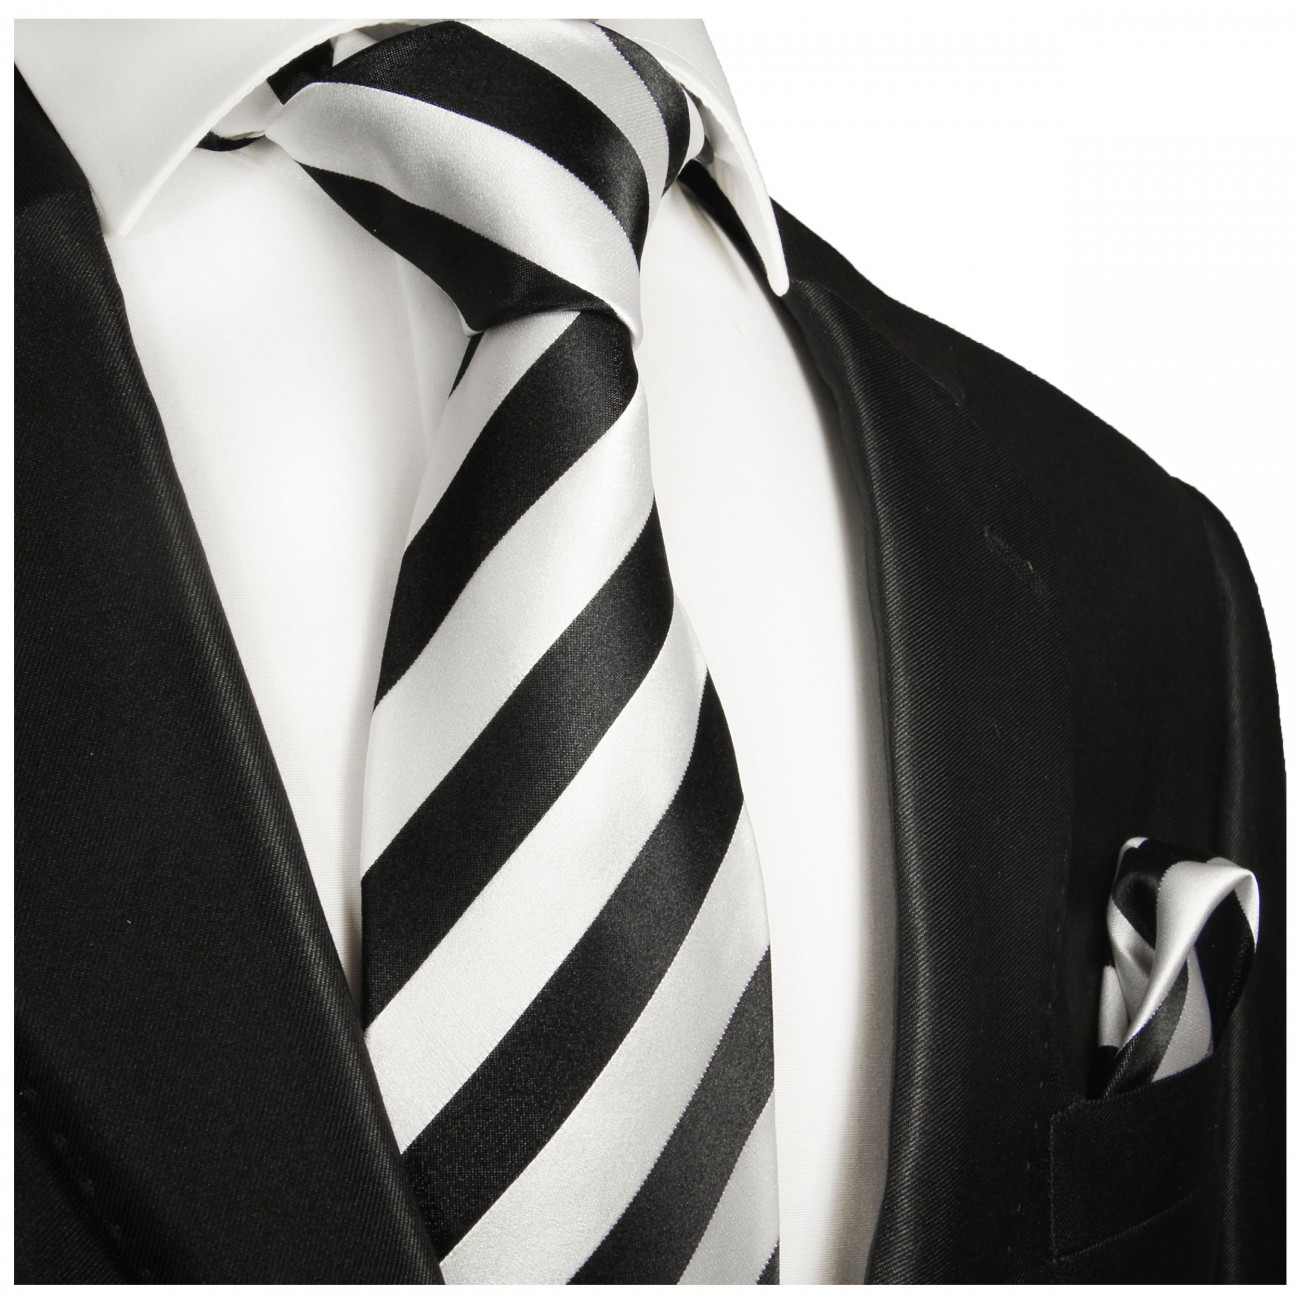 Krawatte schwarz weiß gestreift Seide mit Einstecktuch